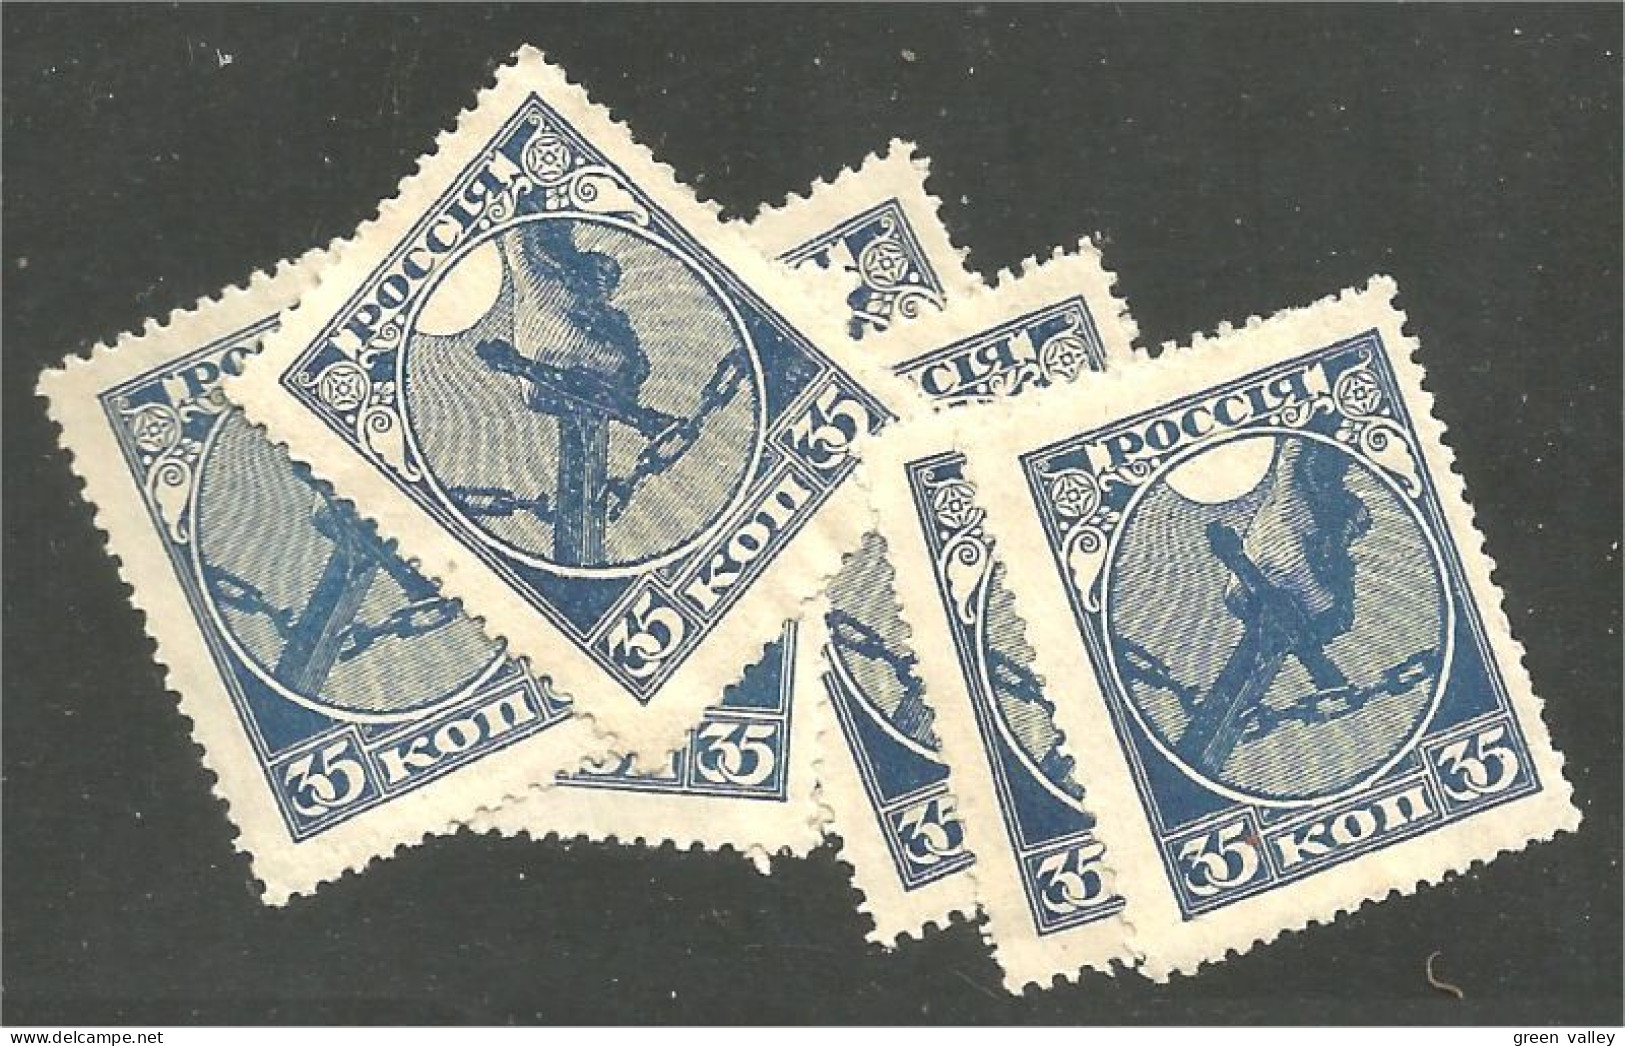 771 Russie 35k Blue Bleu 1918 7 Stamps For Study Chaines Brisées Severing Chains Bondage No Gum Sans Gomme (RUZ-378) - Gebraucht